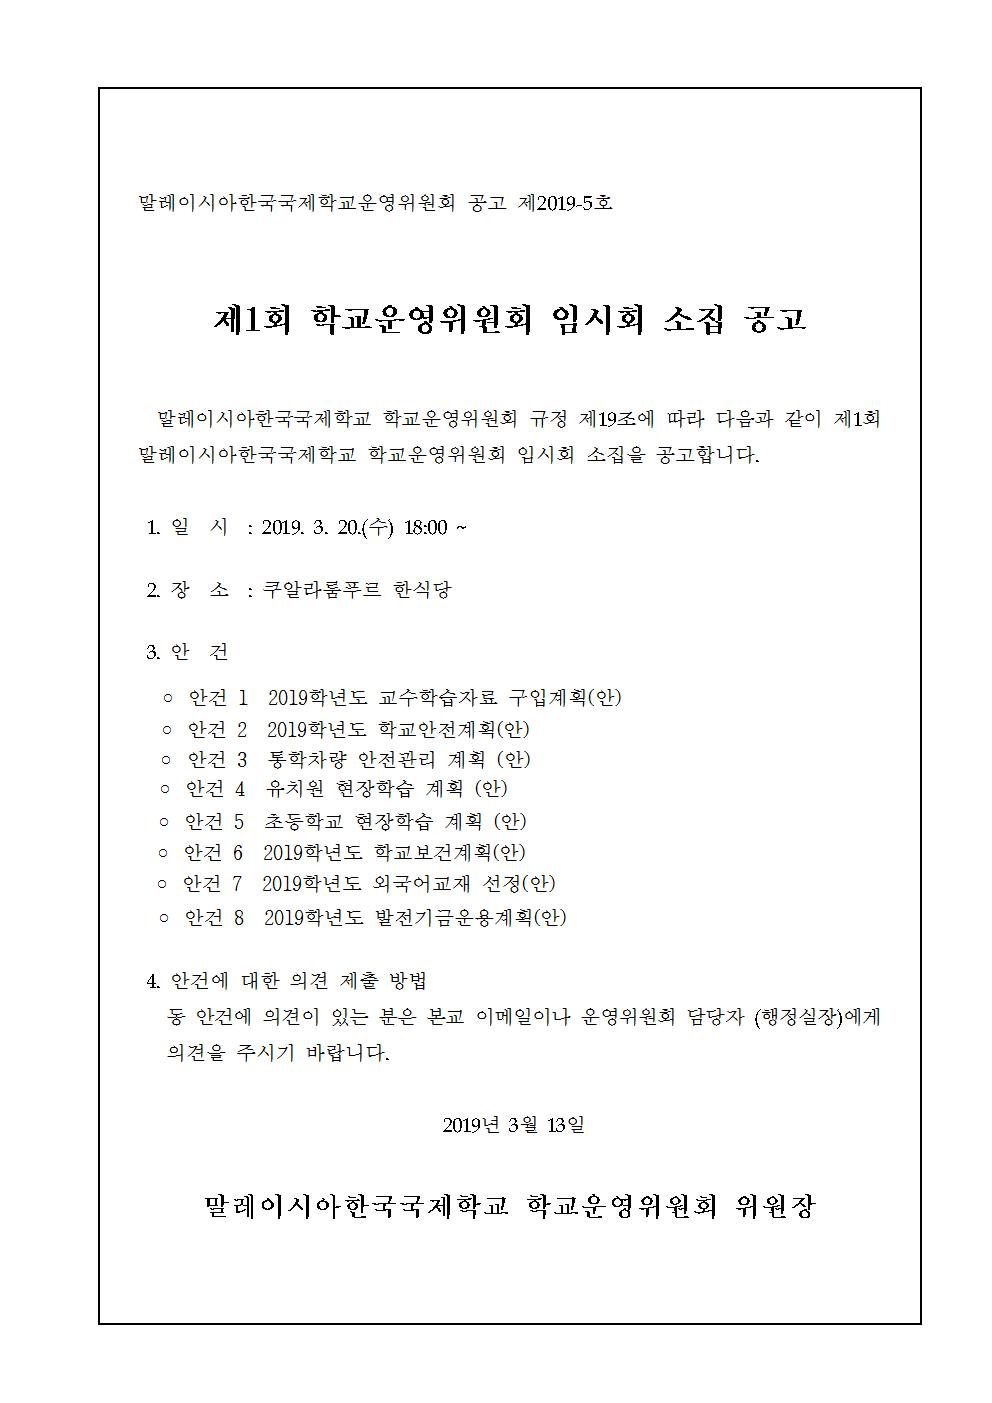 2019-1운영위원회 임시회 개최 알림(시행문)002.jpg